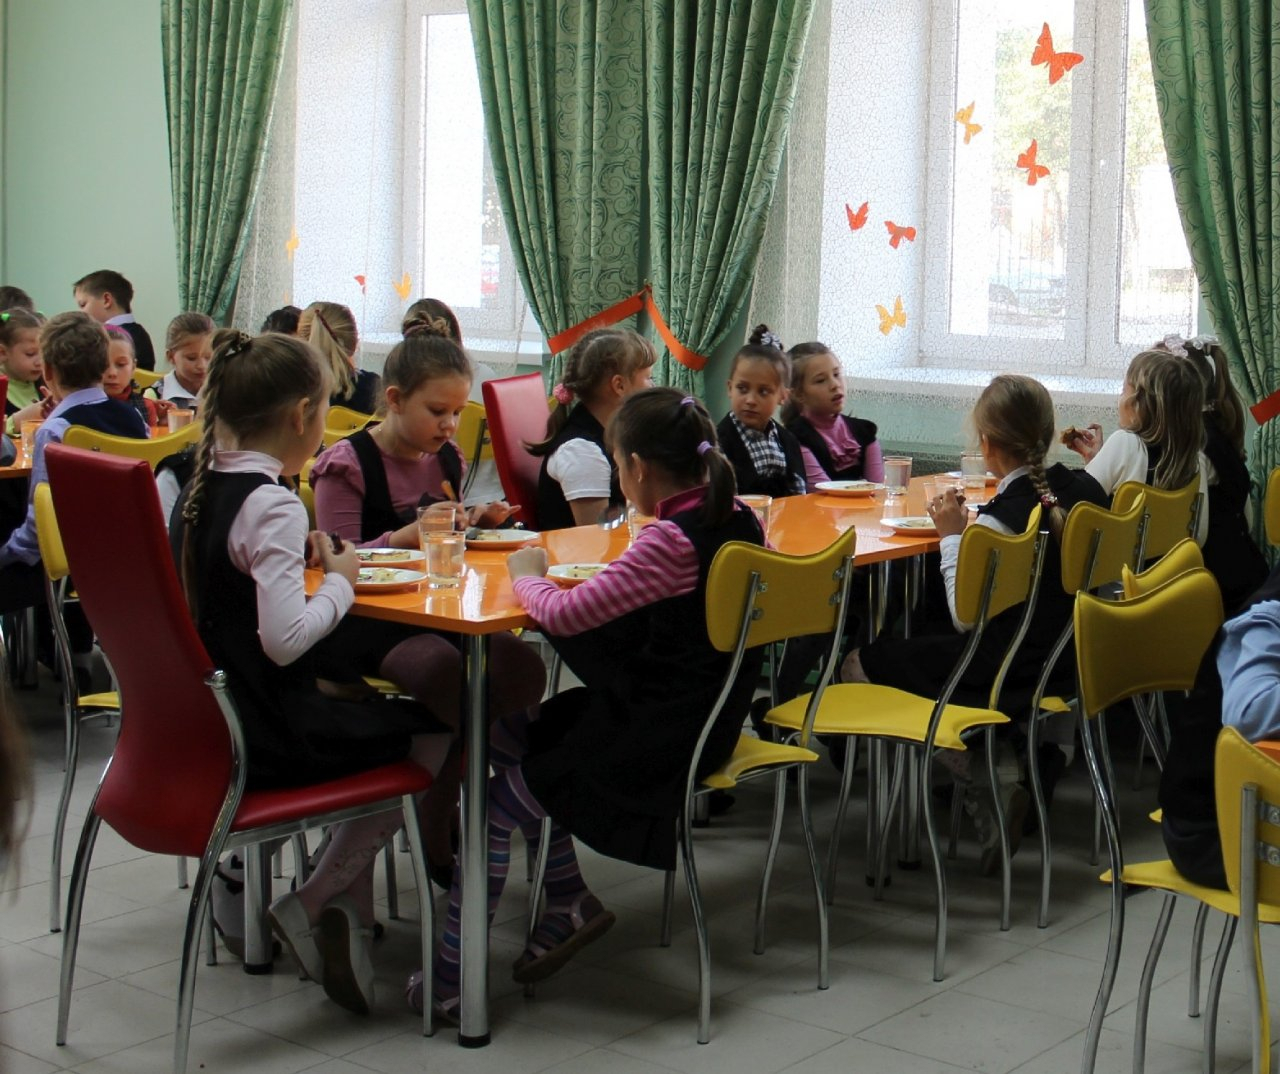 Независимо от социального статуса: в России вводят бесплатное питание для младшеклассников